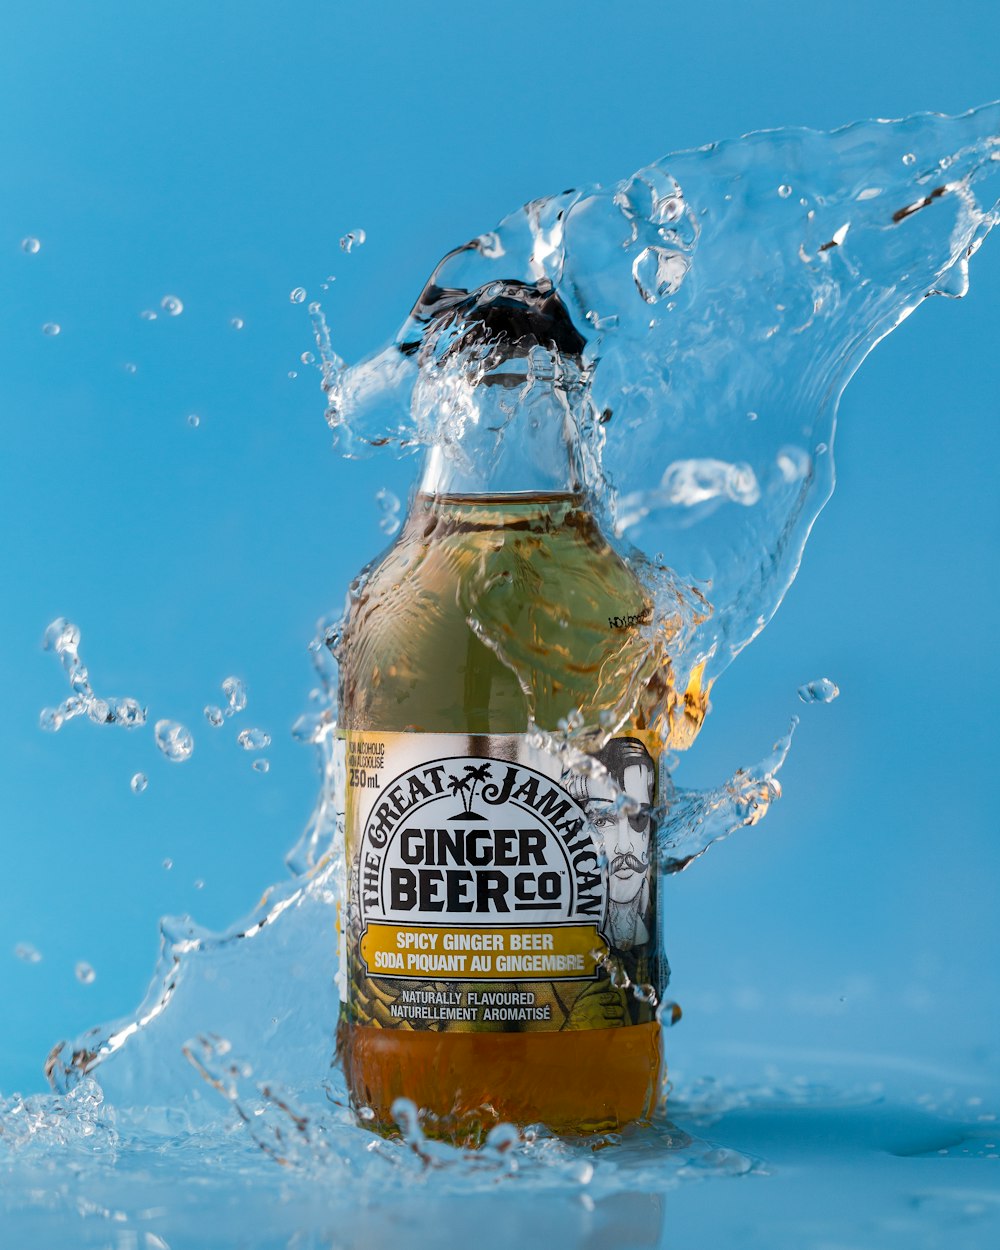 water splashing on Ginger Beer Co bottle